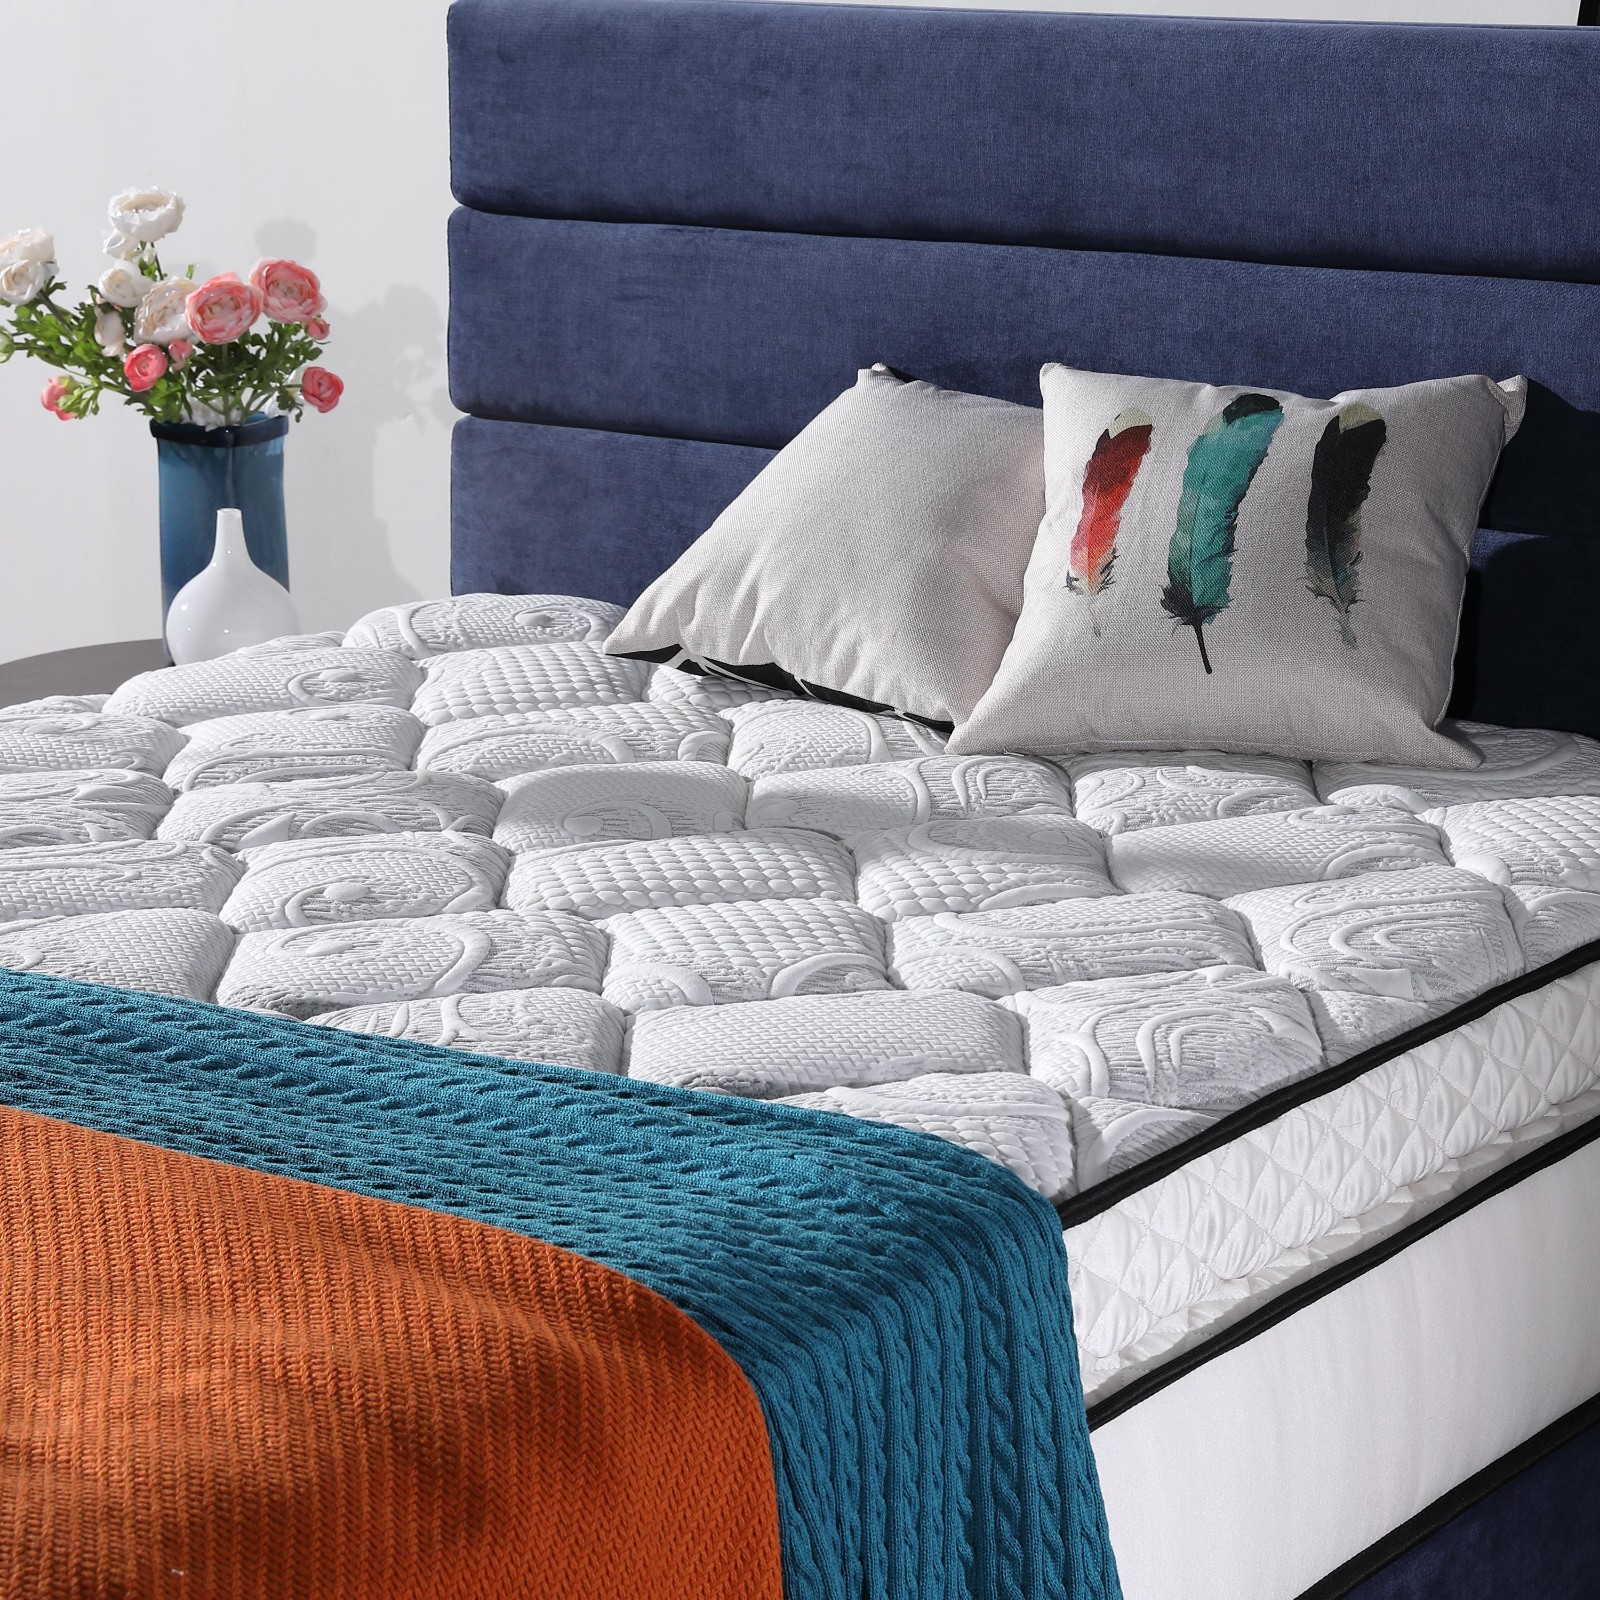 JLH hot-sale trundle bed mattress for sale delivered easily-3